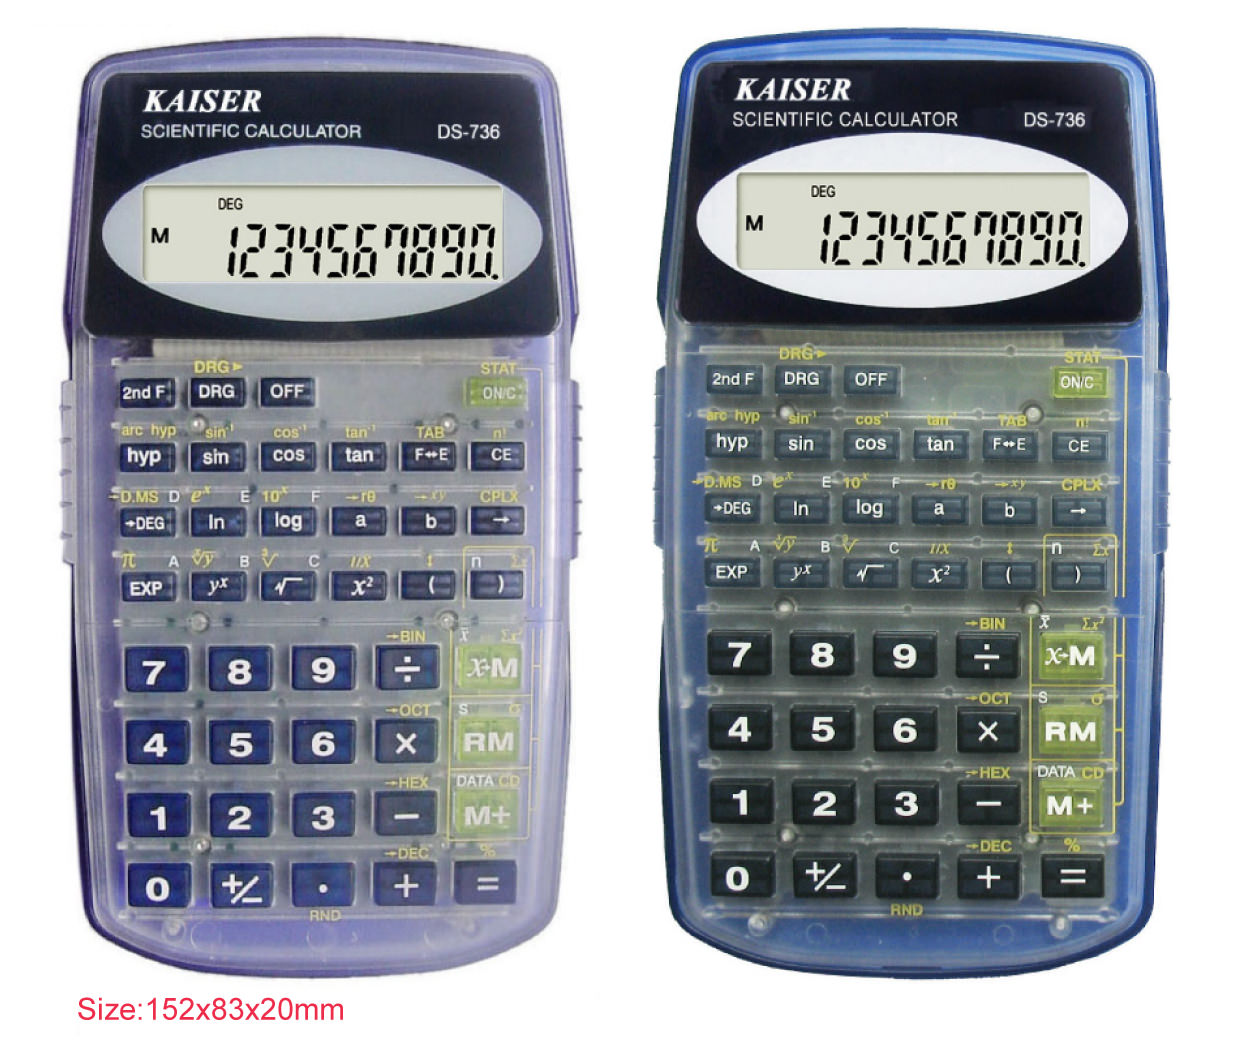 8+2 digit 136 functions scientific calculator